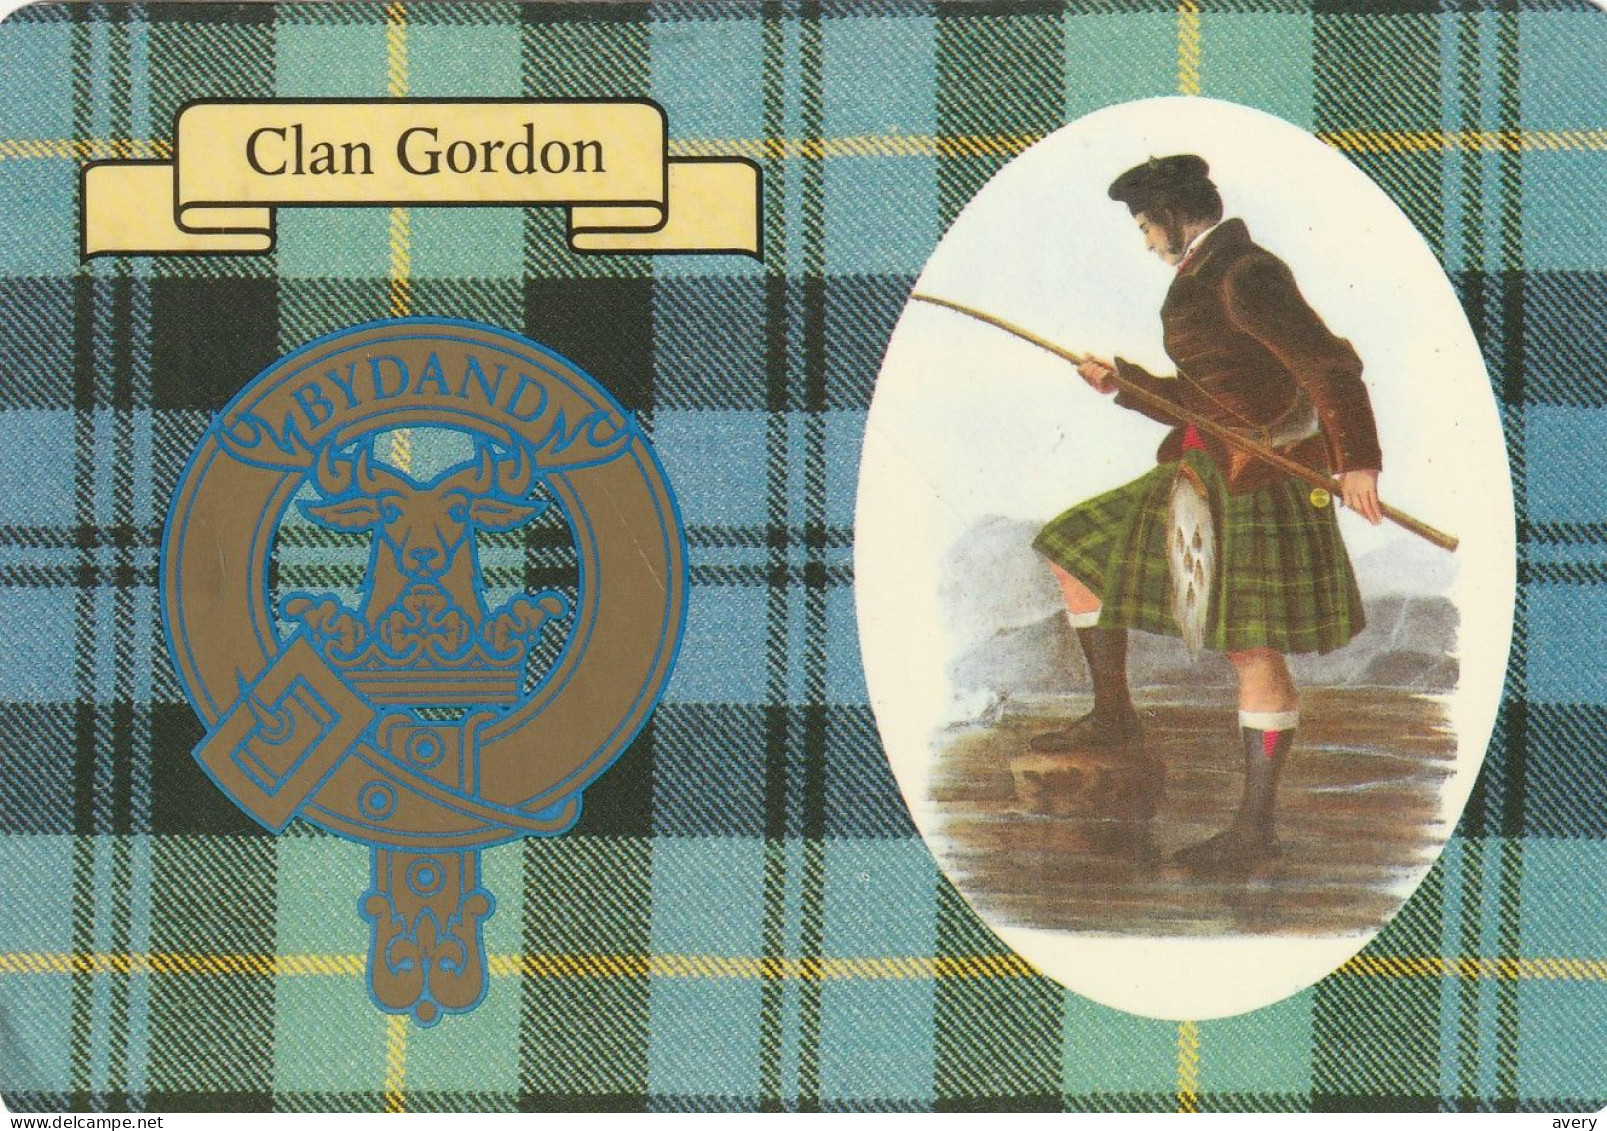 Clan Gordon, Scotland - Aberdeenshire